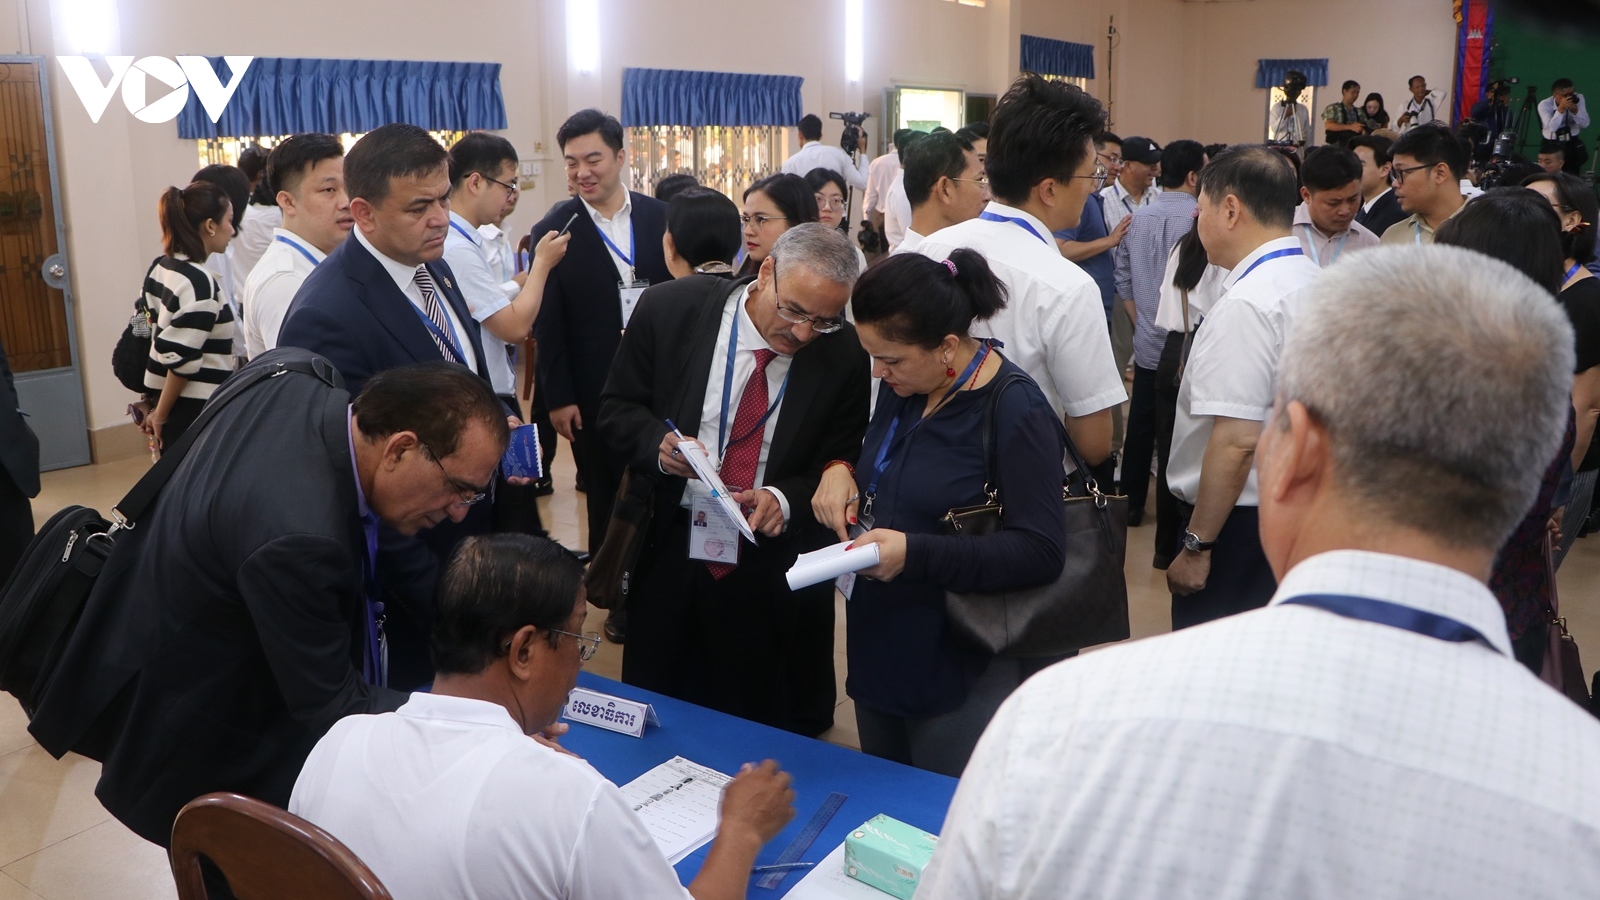 27 chính đảng Campuchia sẽ ký liên minh với CPP cầm quyền